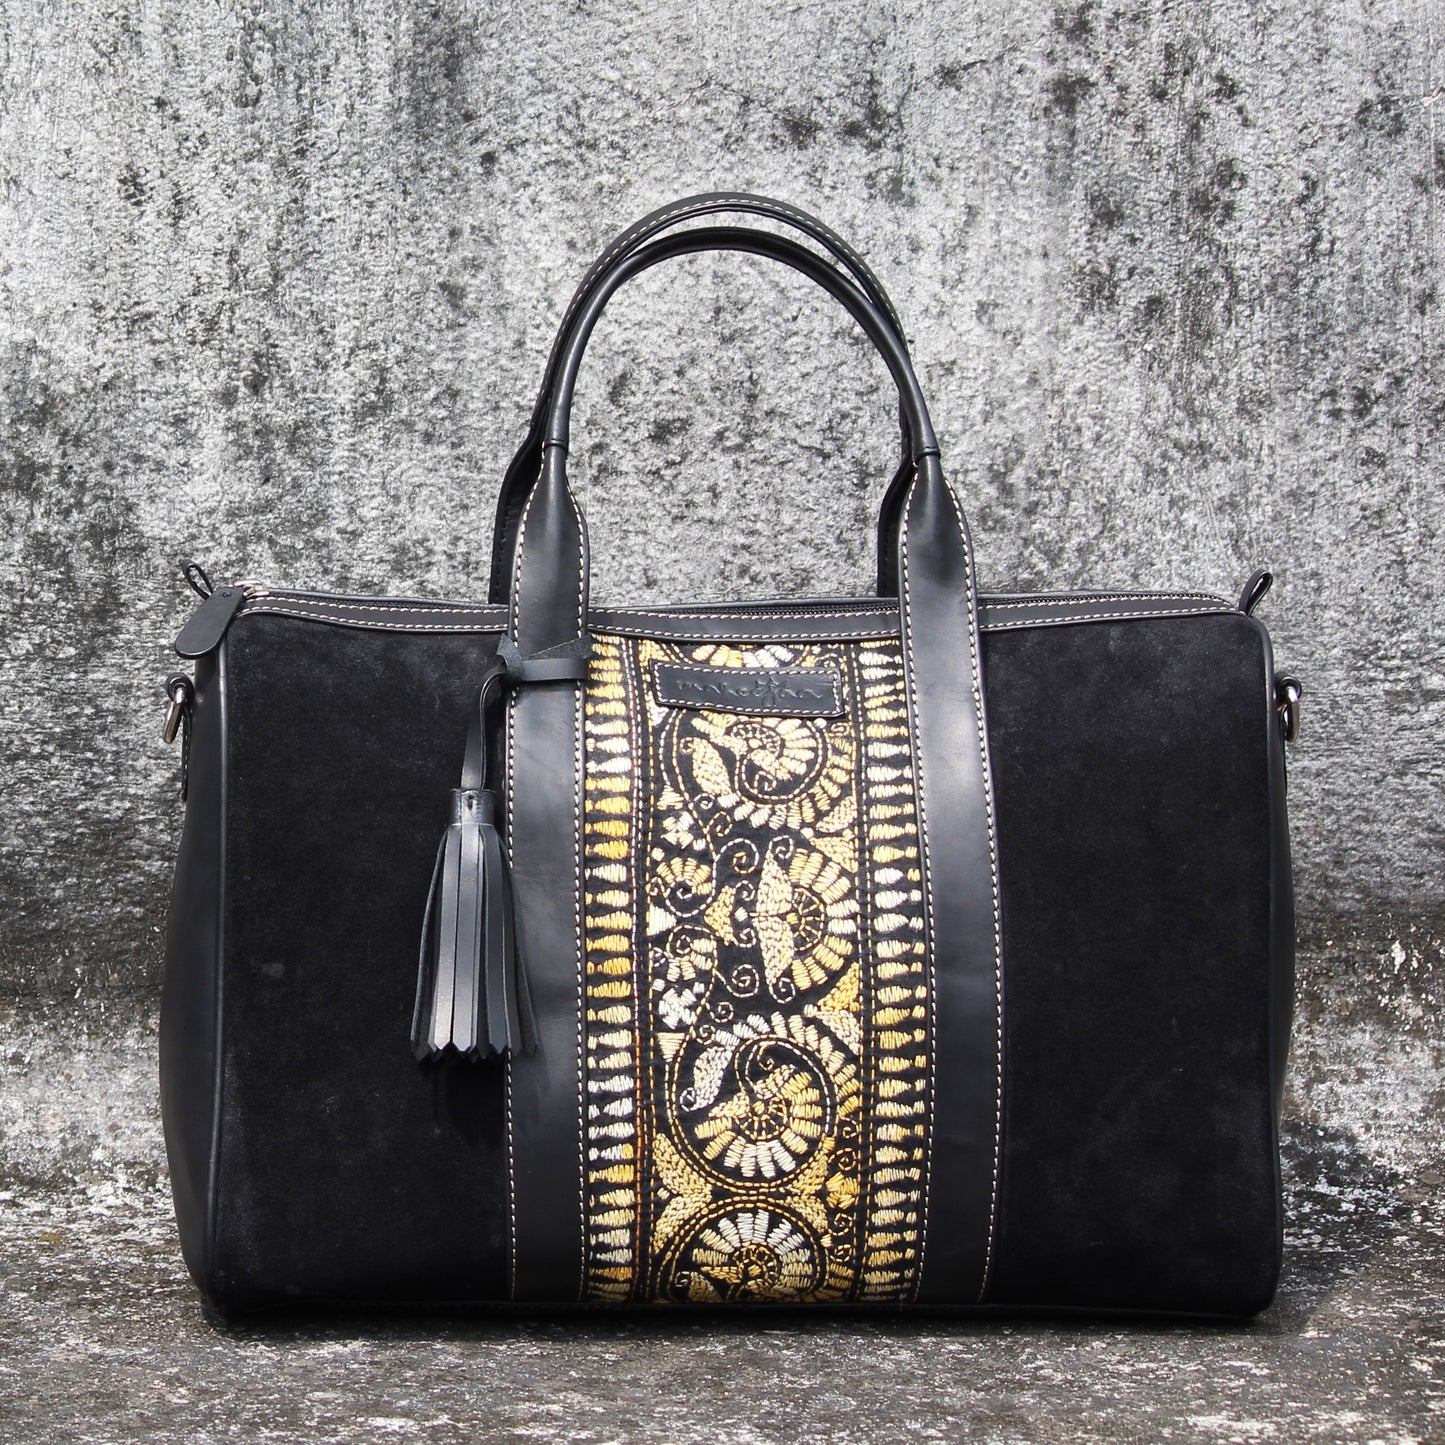 Suede Leather Embroidery Duffle/Weekender Sling Bag - Black